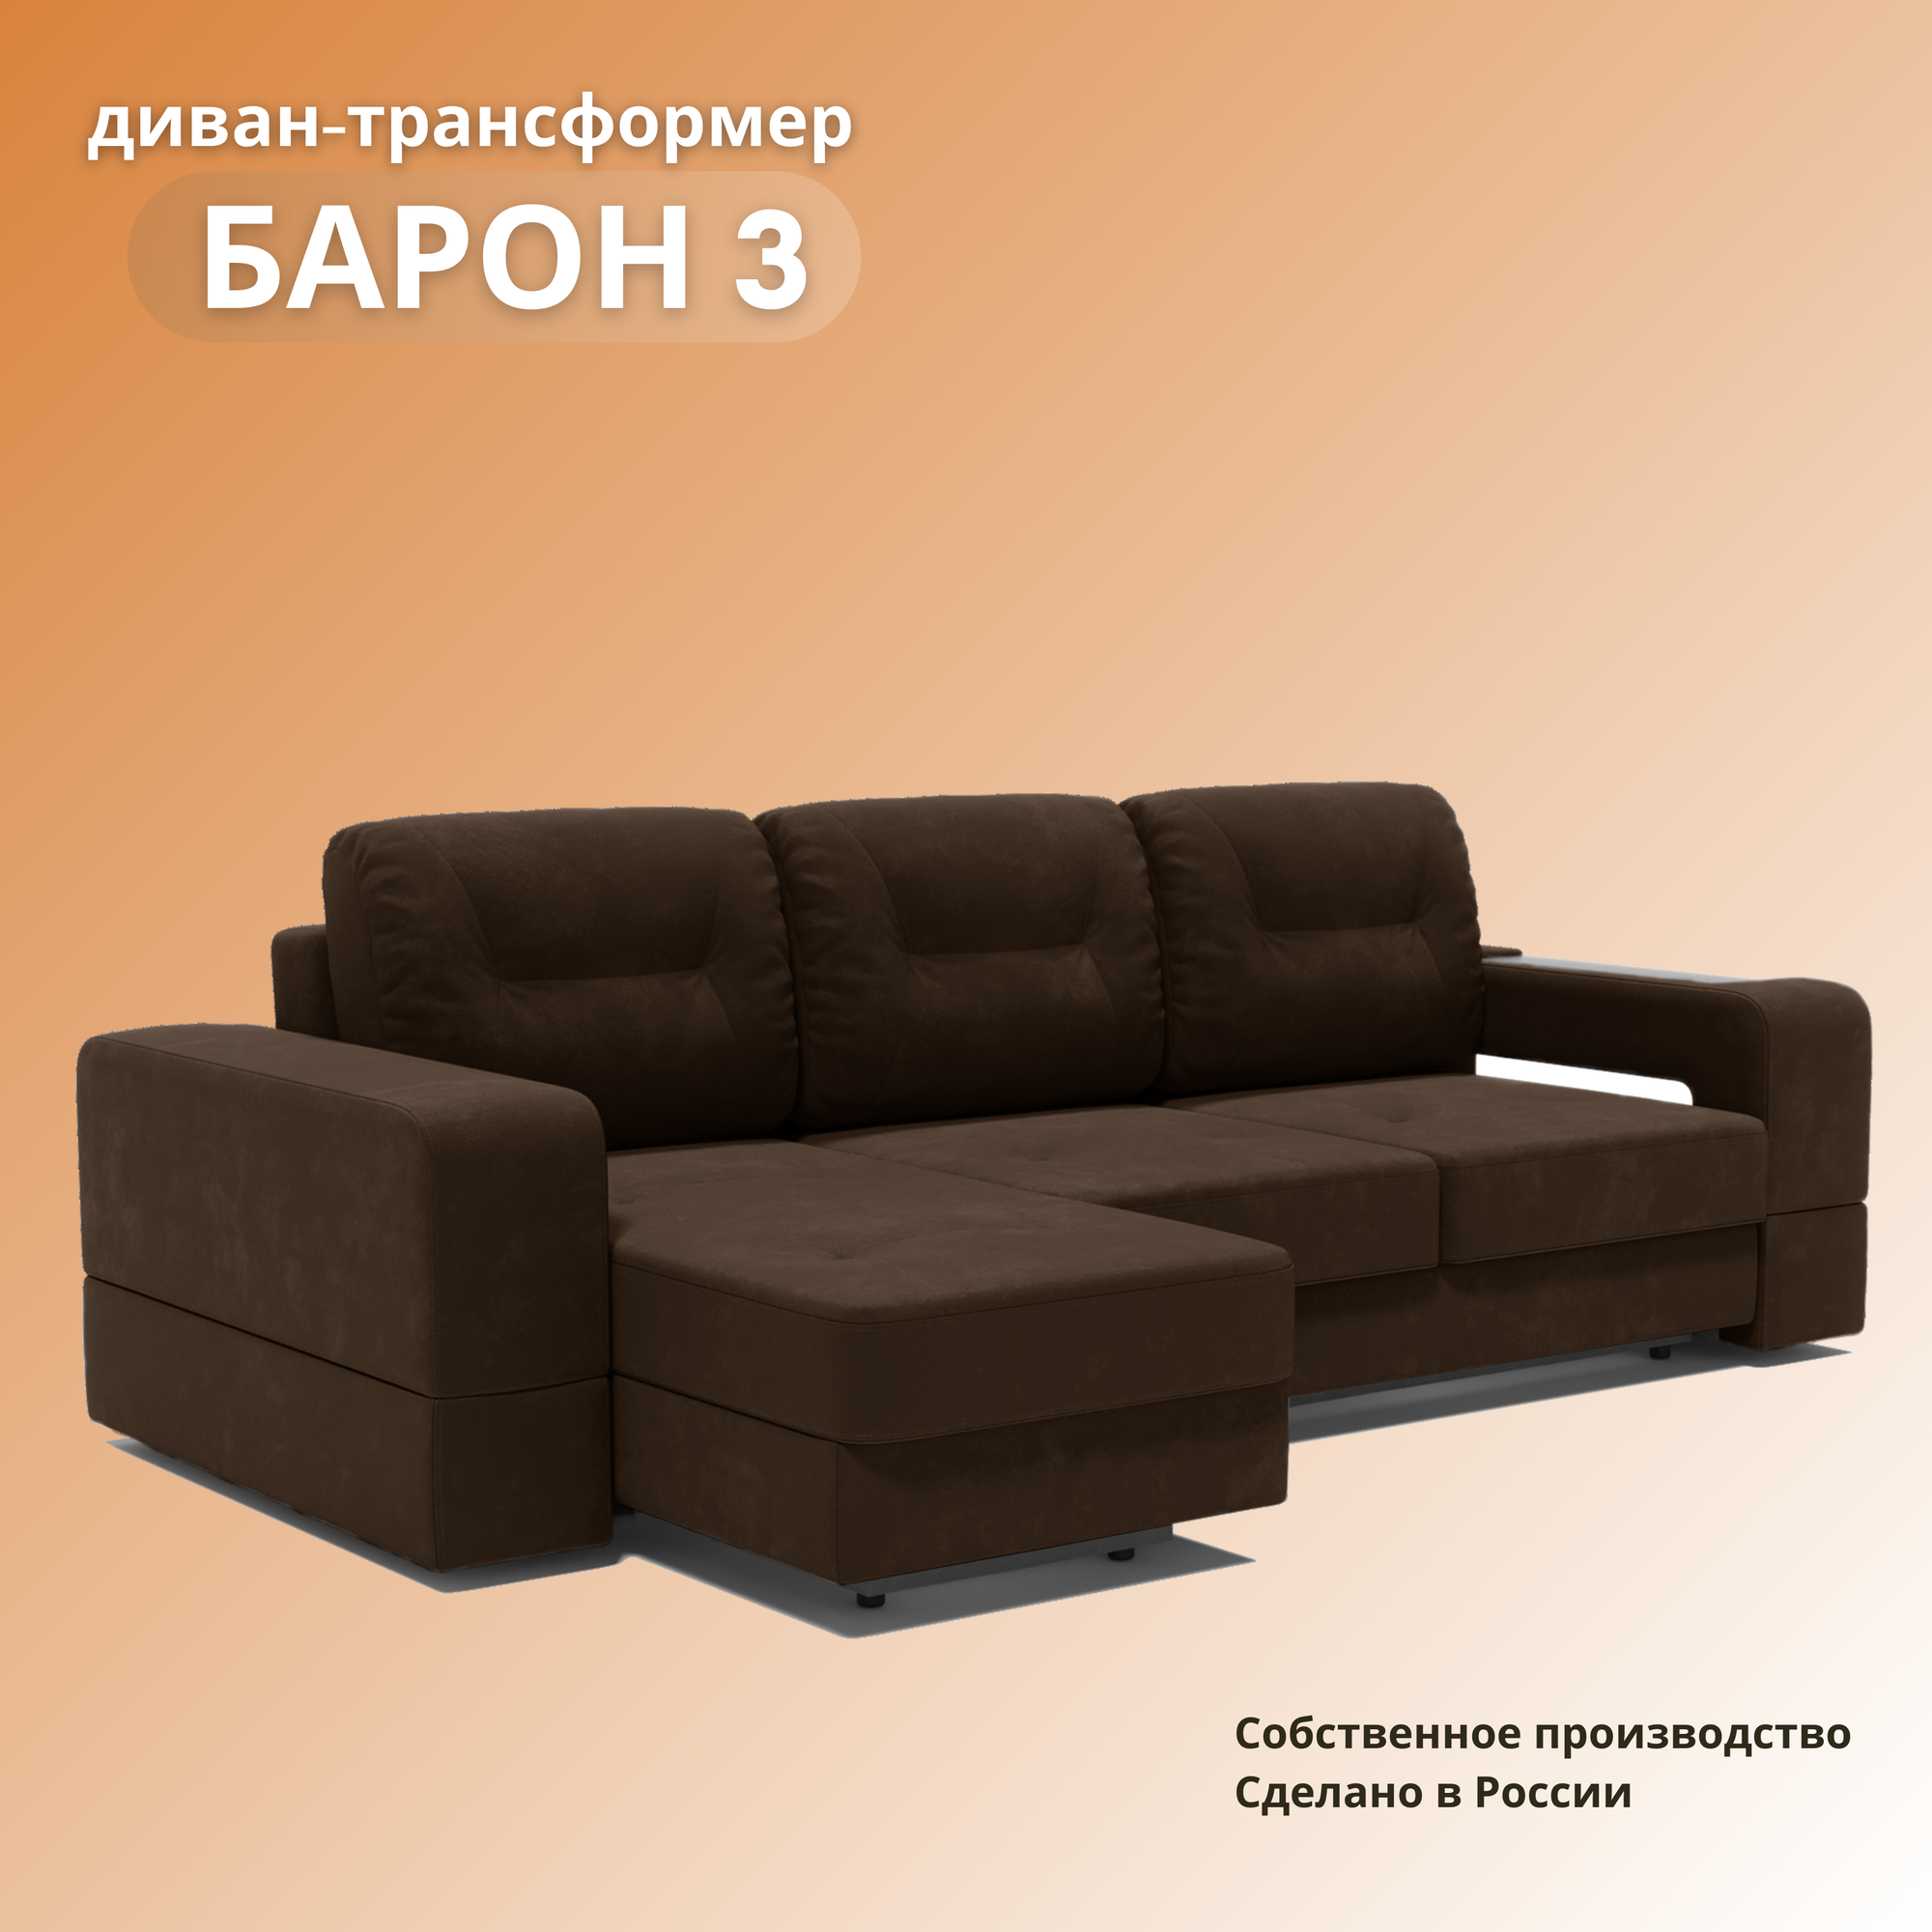 Угловой диван «Барон 3», раскладной диван трансформер на механизме «тик-так», 250х151х90см, коричневый